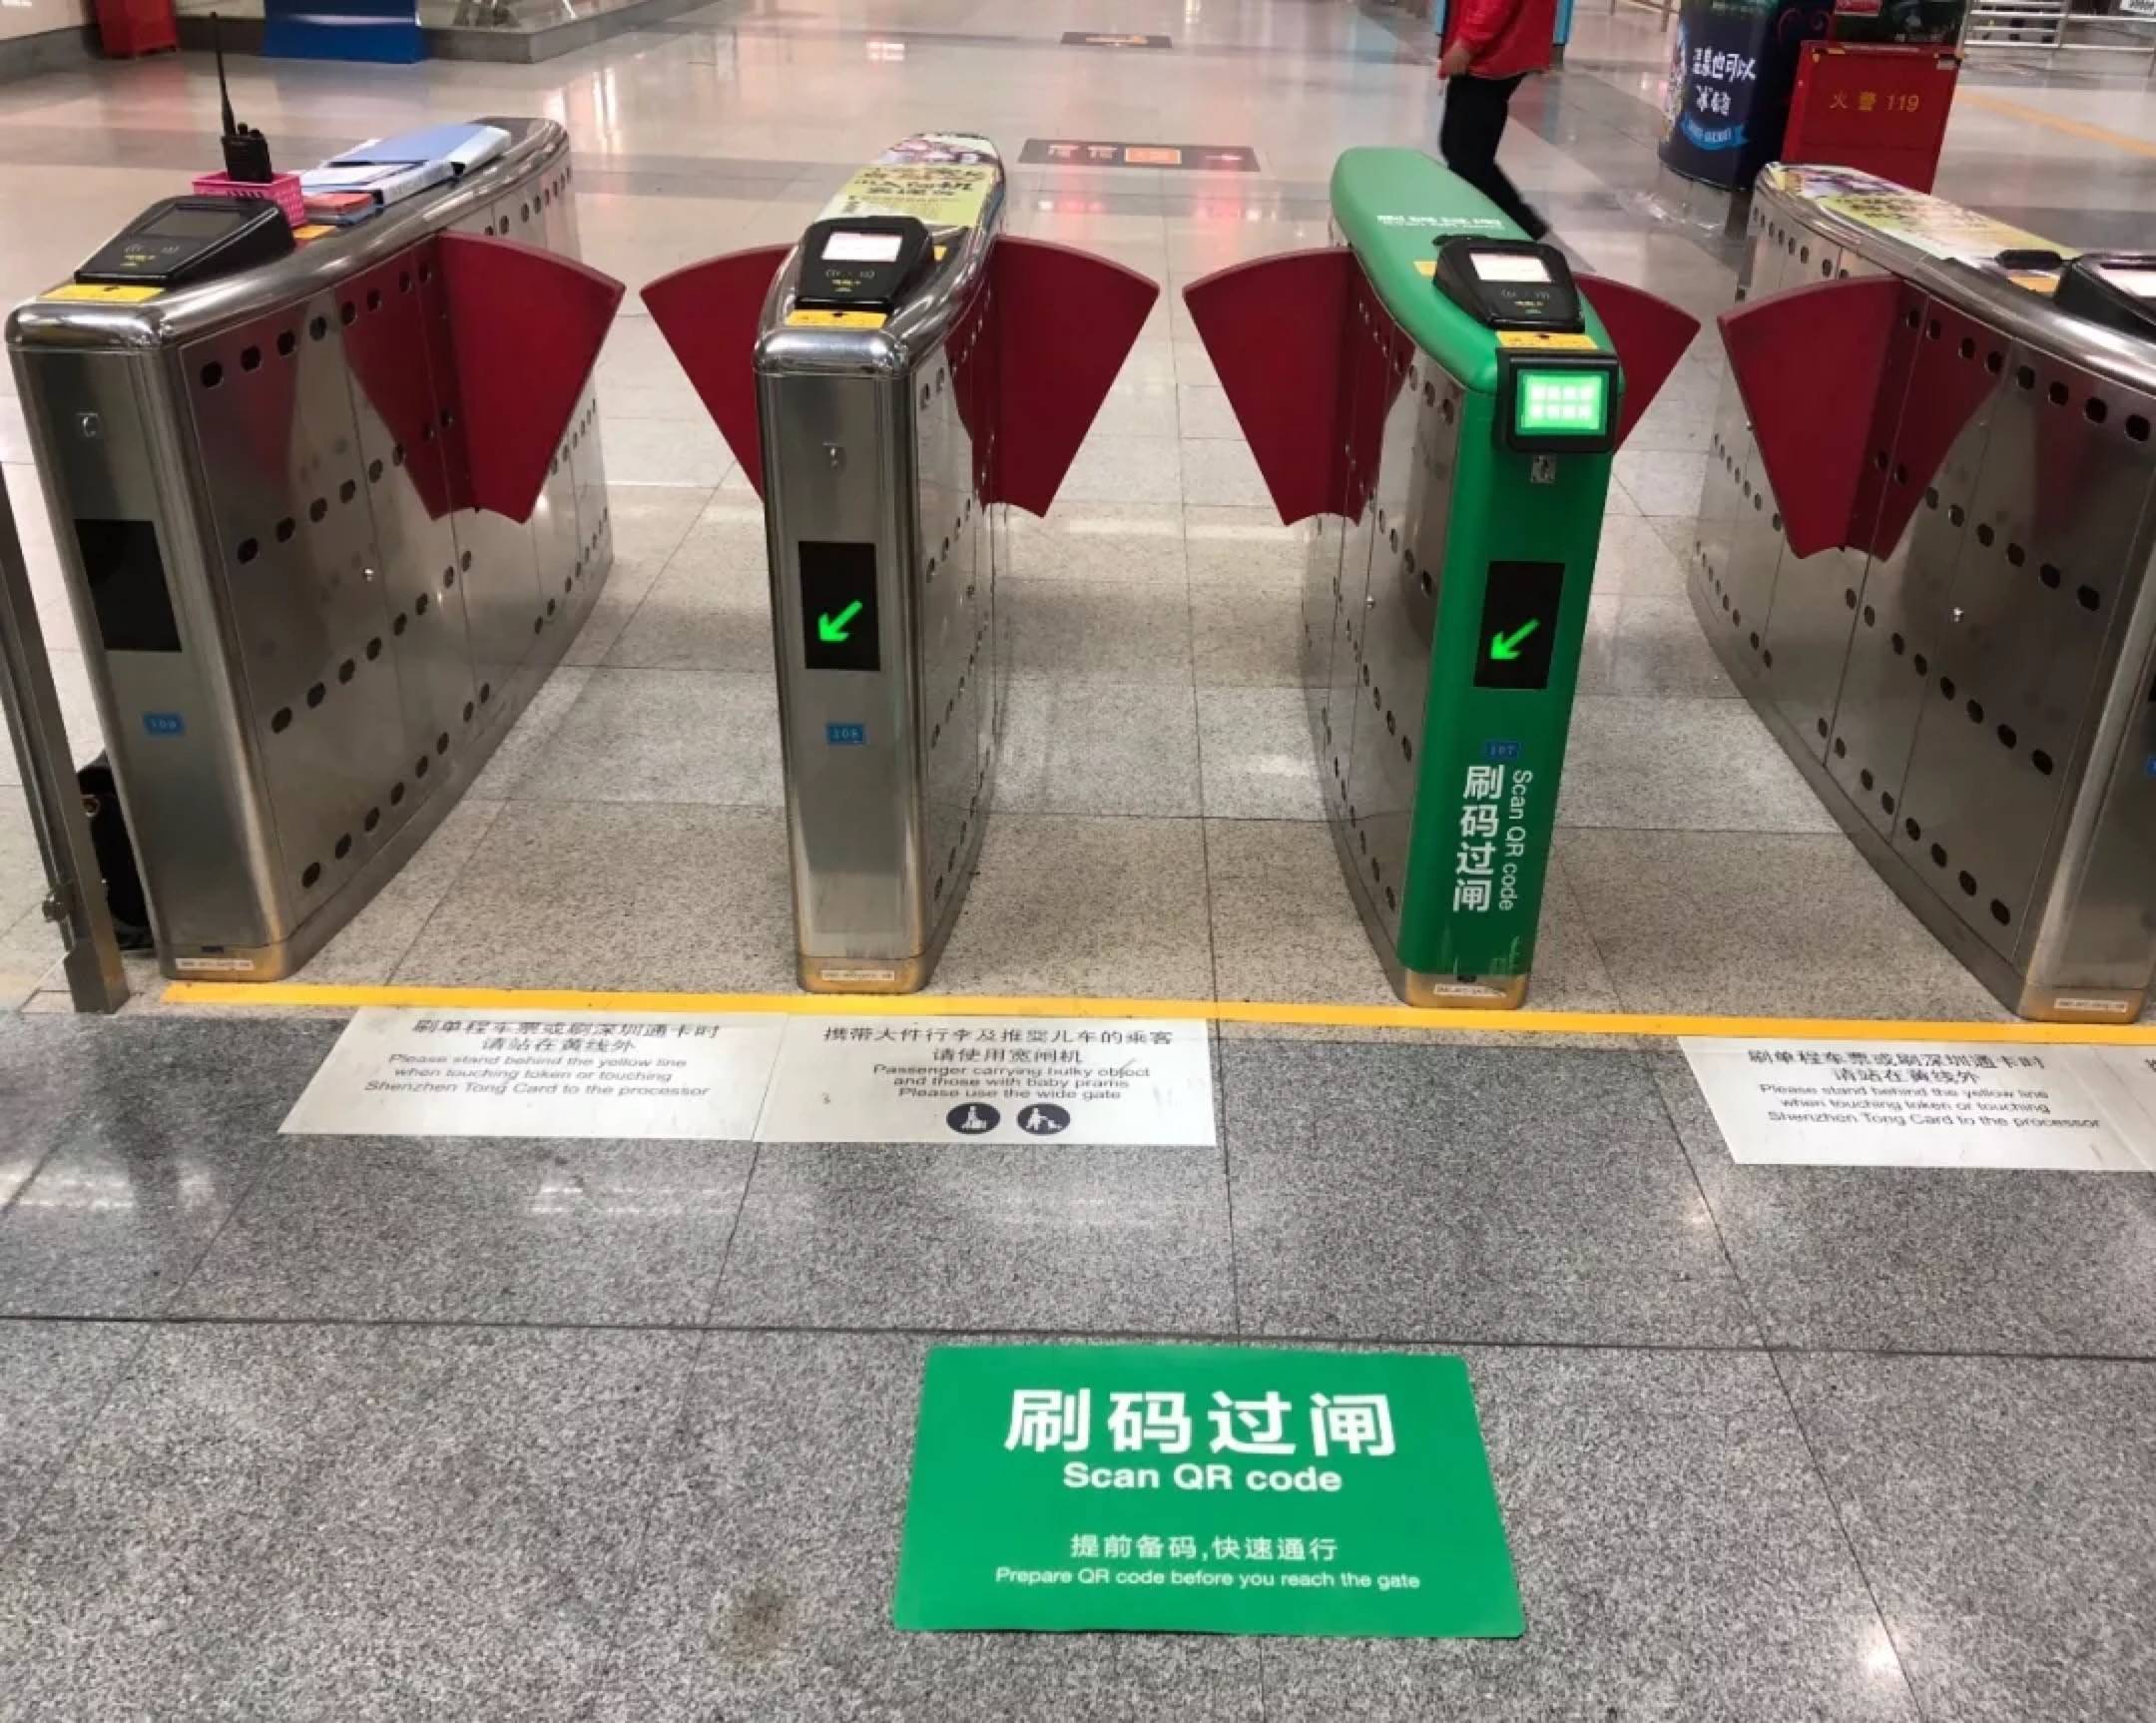 腾讯乘车码将登陆深圳市地铁 可实现先乘车后微信付费